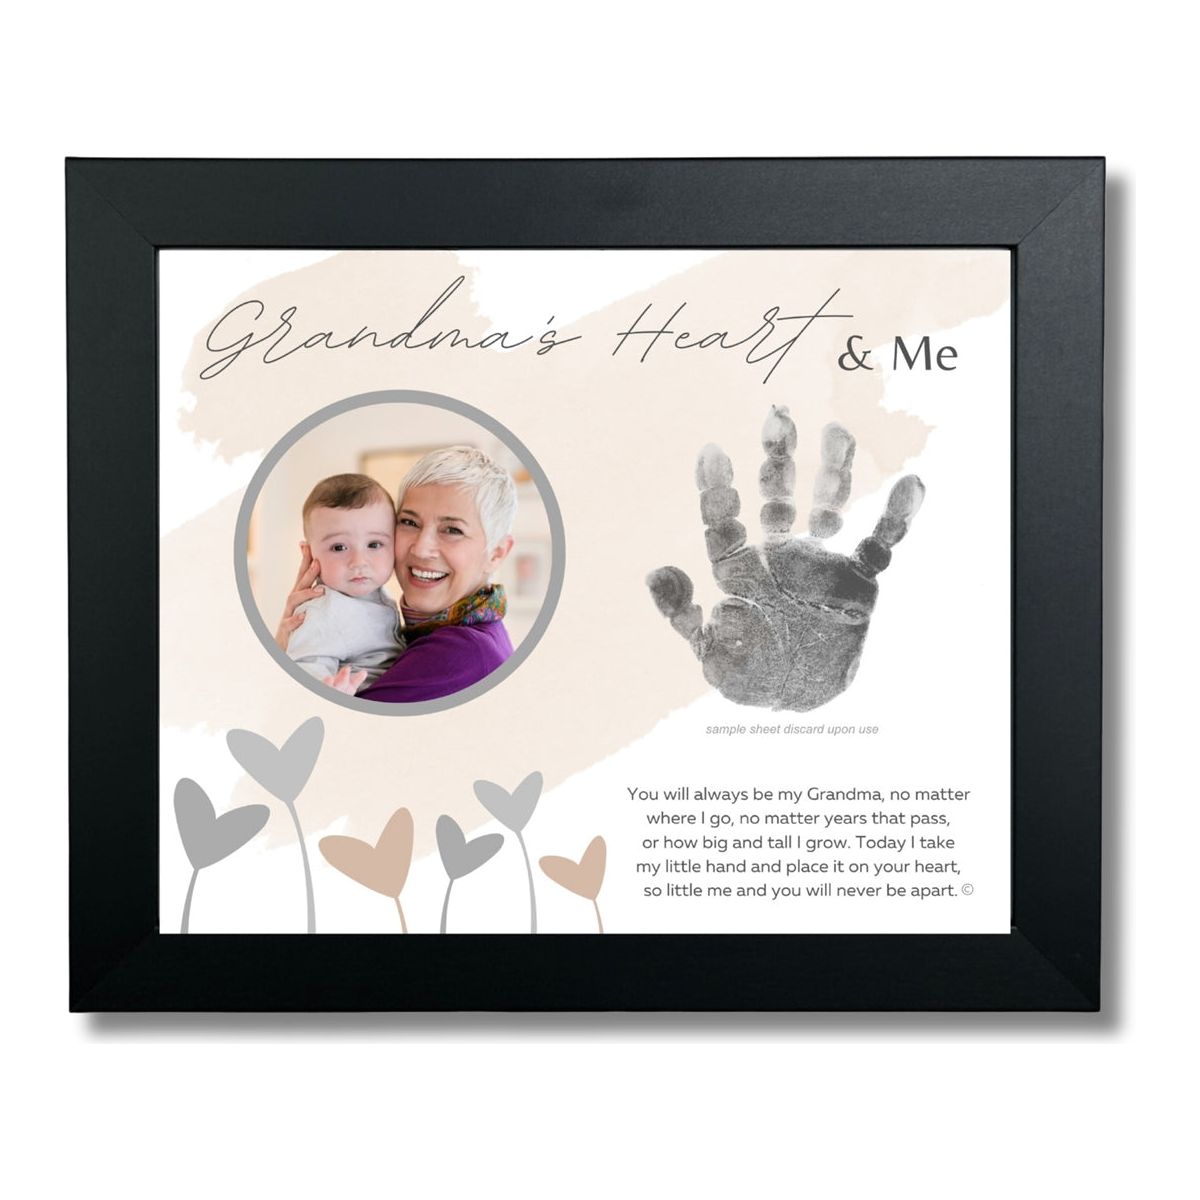 Grandma Handprint Frame: Heart and Me